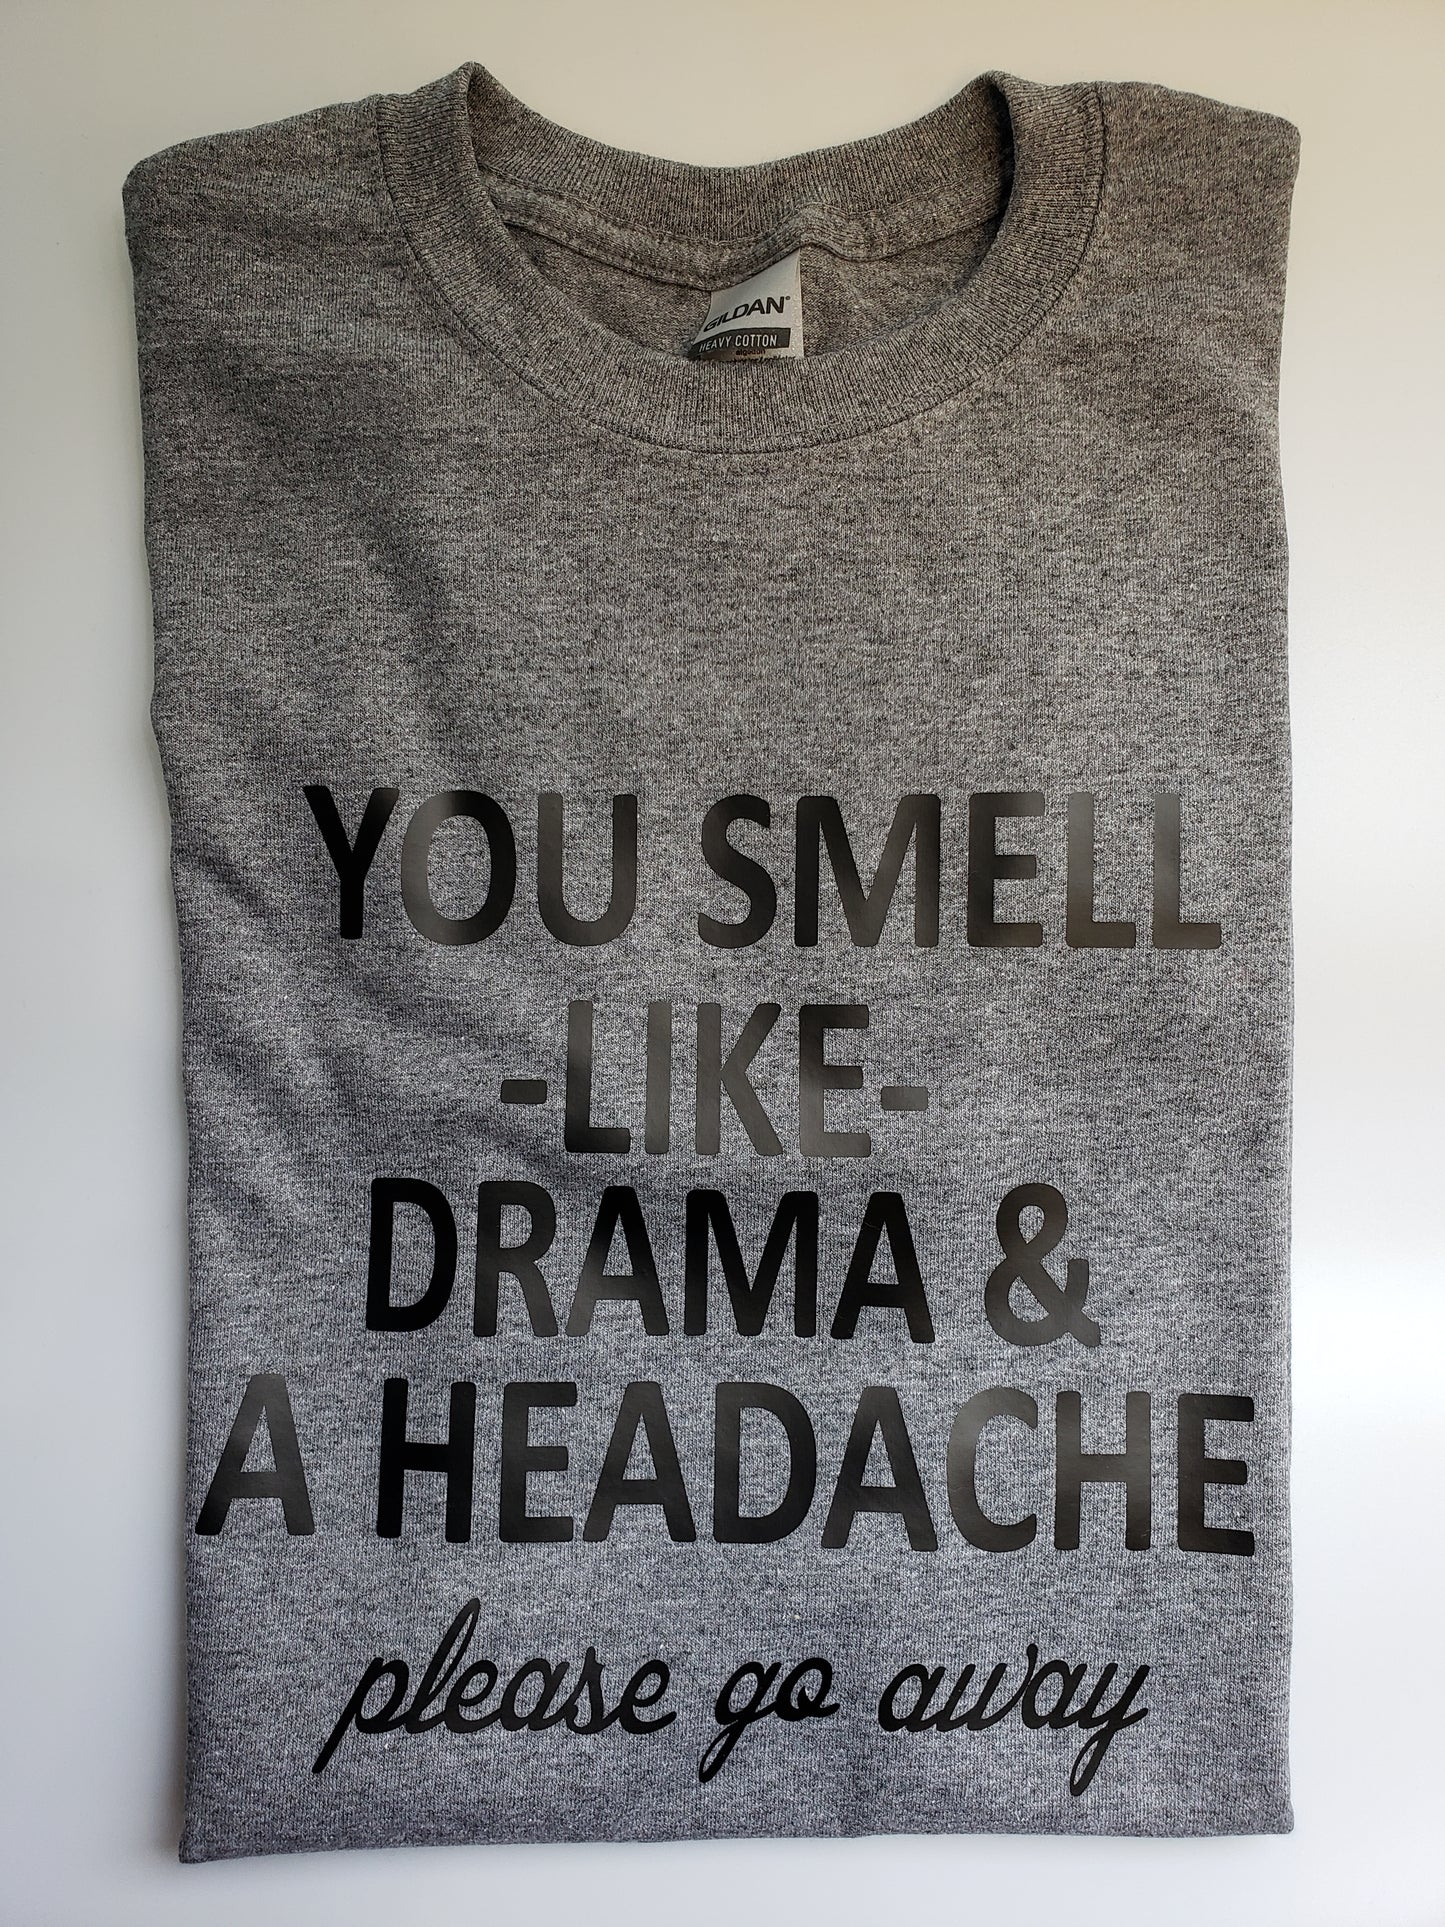 "Drama & A Headache" Custom T-shirt